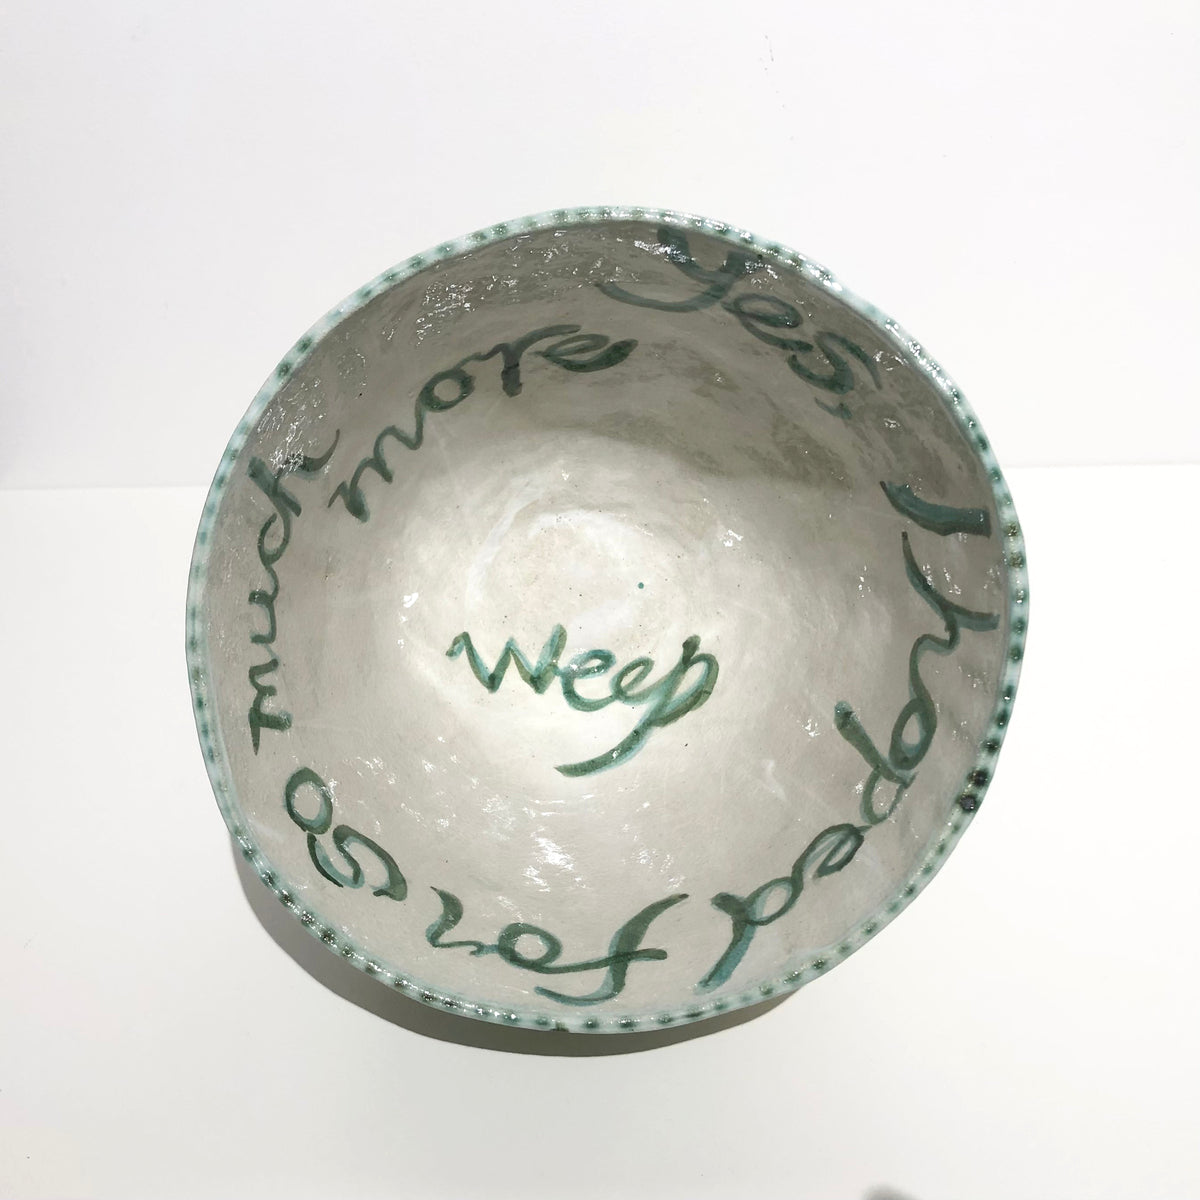 Golden Whistler Bowl with Acacia